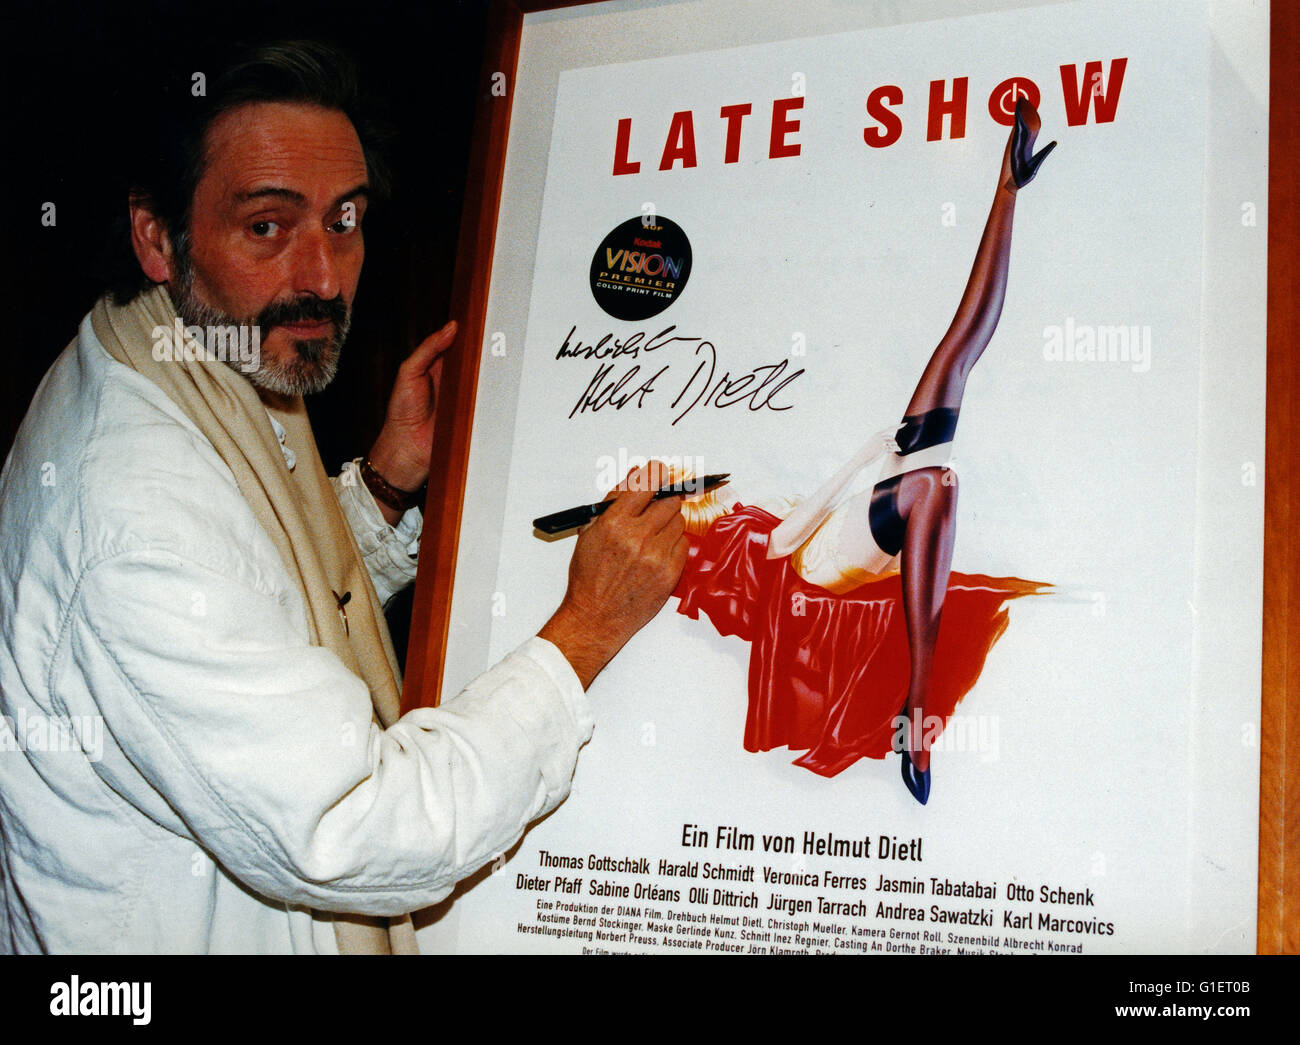 Der Deutsche Regisseur Helmut Dietl Signiert Das Filmplakat von "Late Show", 1990er Jahre Deutschland. Deutscher Regisseur Helmut Dietl Unterzeichnung das Plakat seines Films "Late Show", Deutschland der 1990er Jahre. Stockfoto